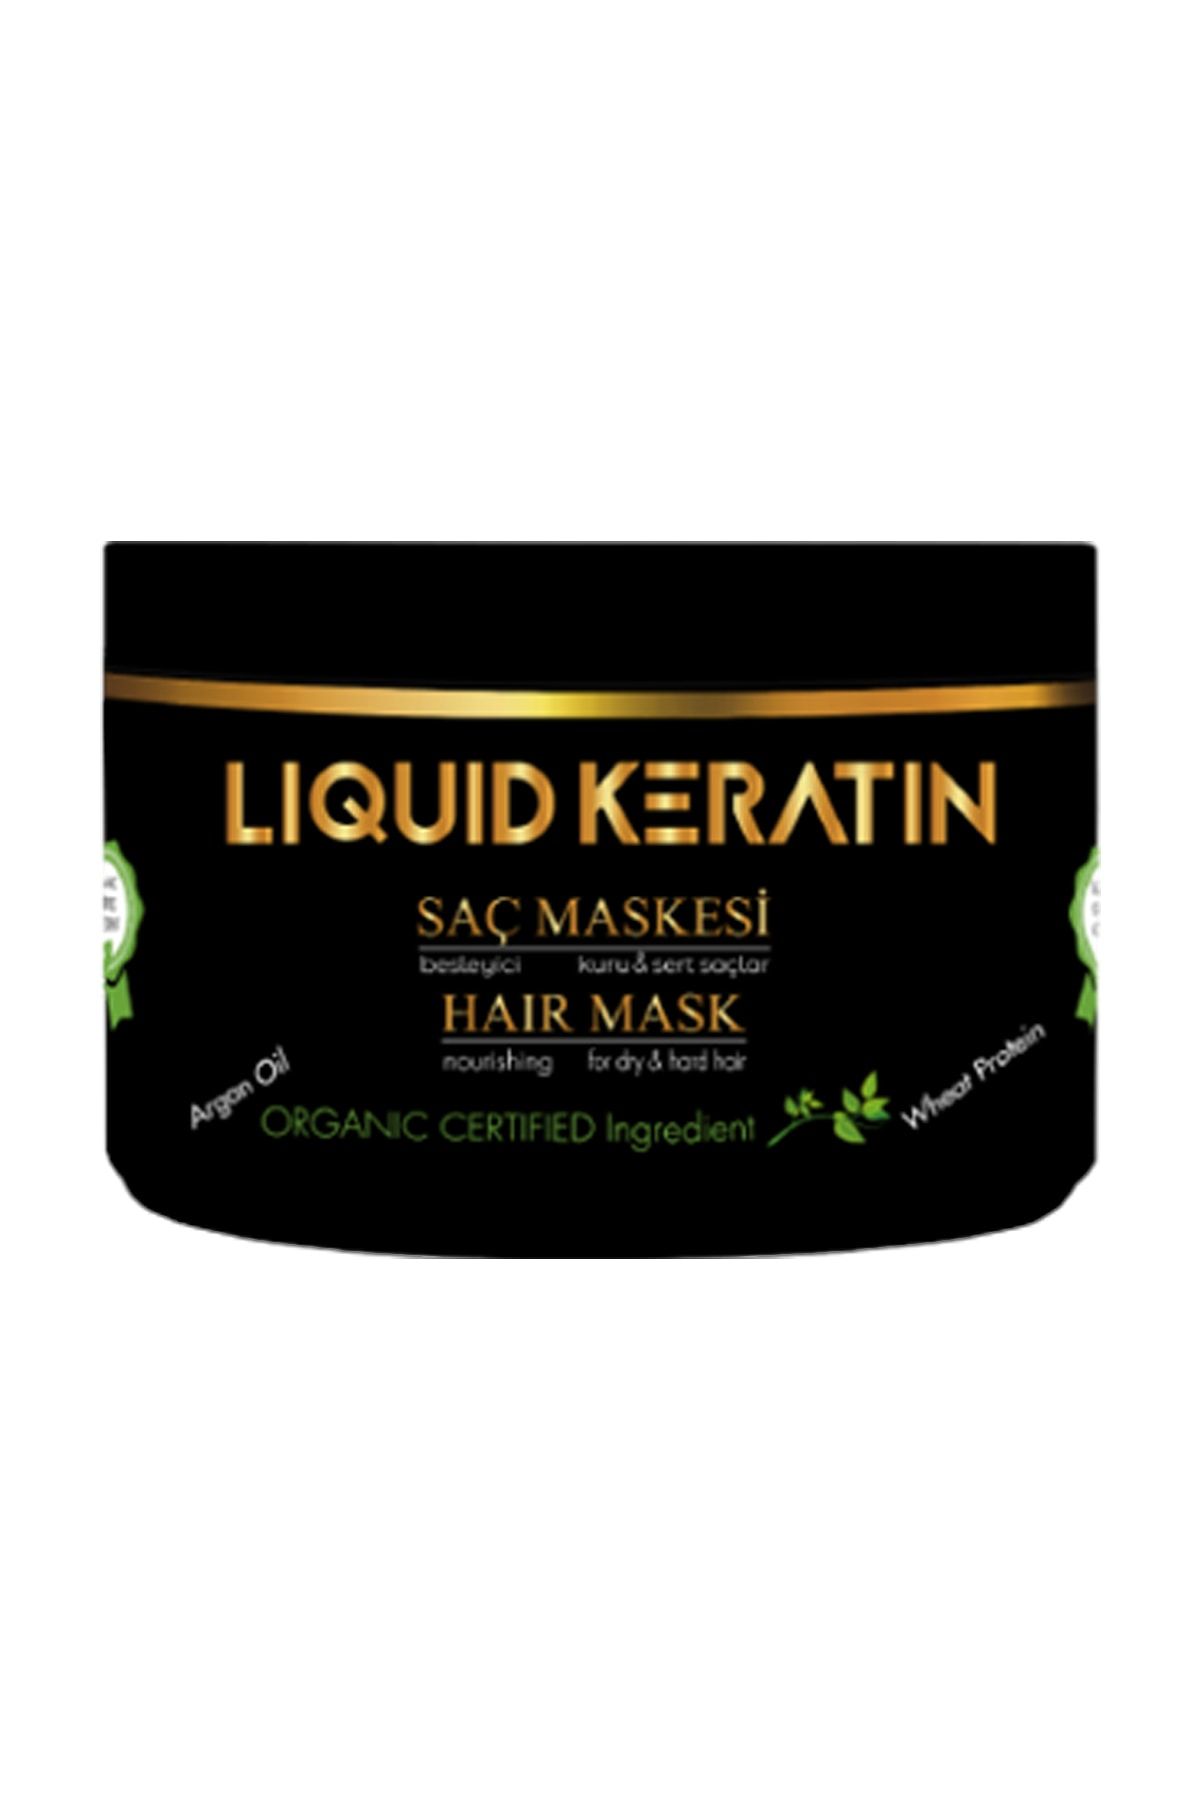 Liquid Keratin Organik Saf Keratinli Saç Maskesi (250ml) Kuru Yıpranmış Yanmış Kırık Saçlara Onarıcı En Iyi Bakım